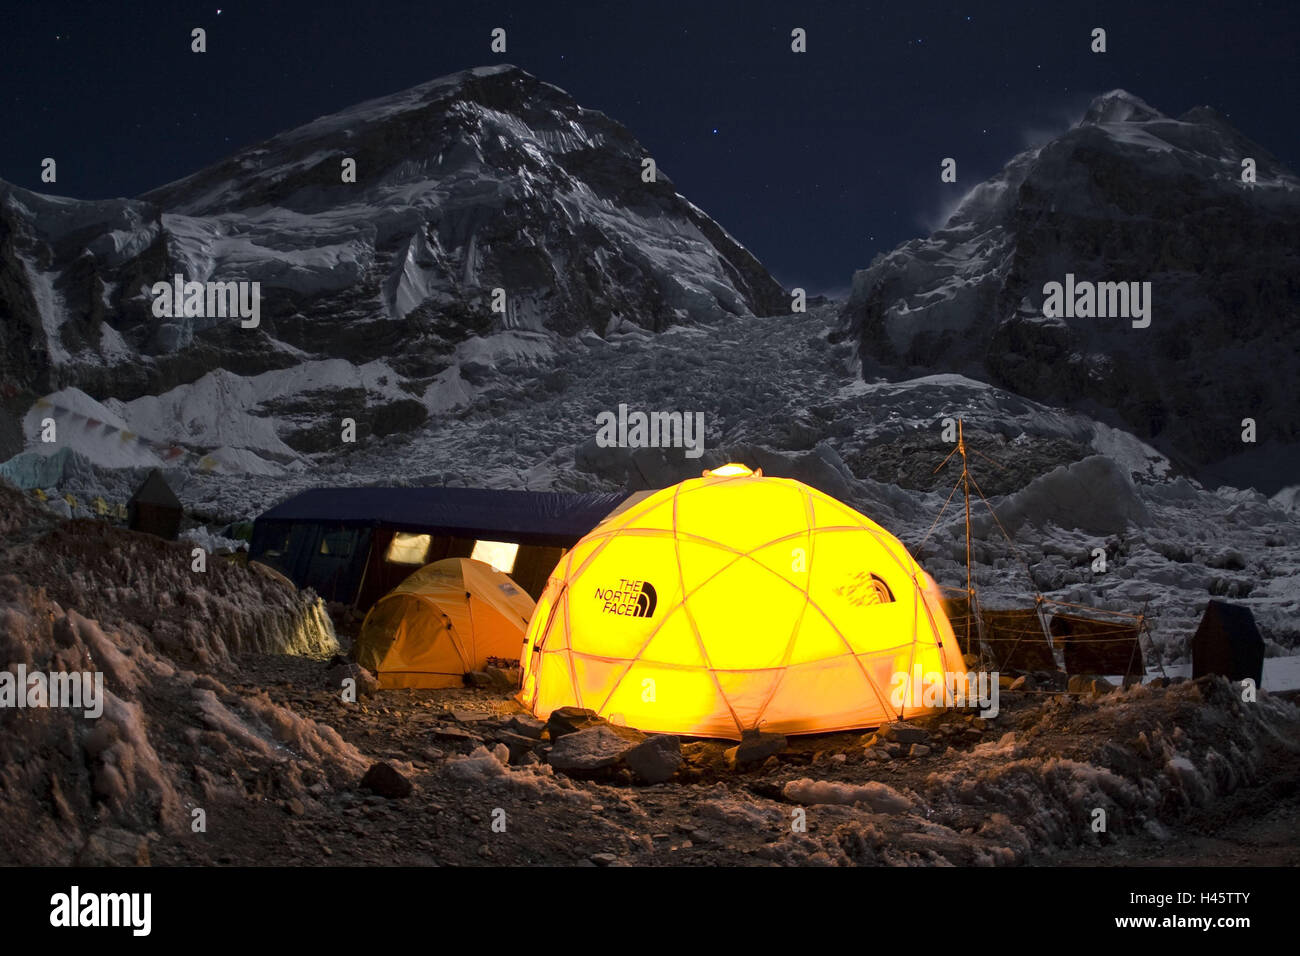 Il Nepal, Solo Khumbu, regione Everest, il campo base Everest, tende, illuminazione, Foto Stock